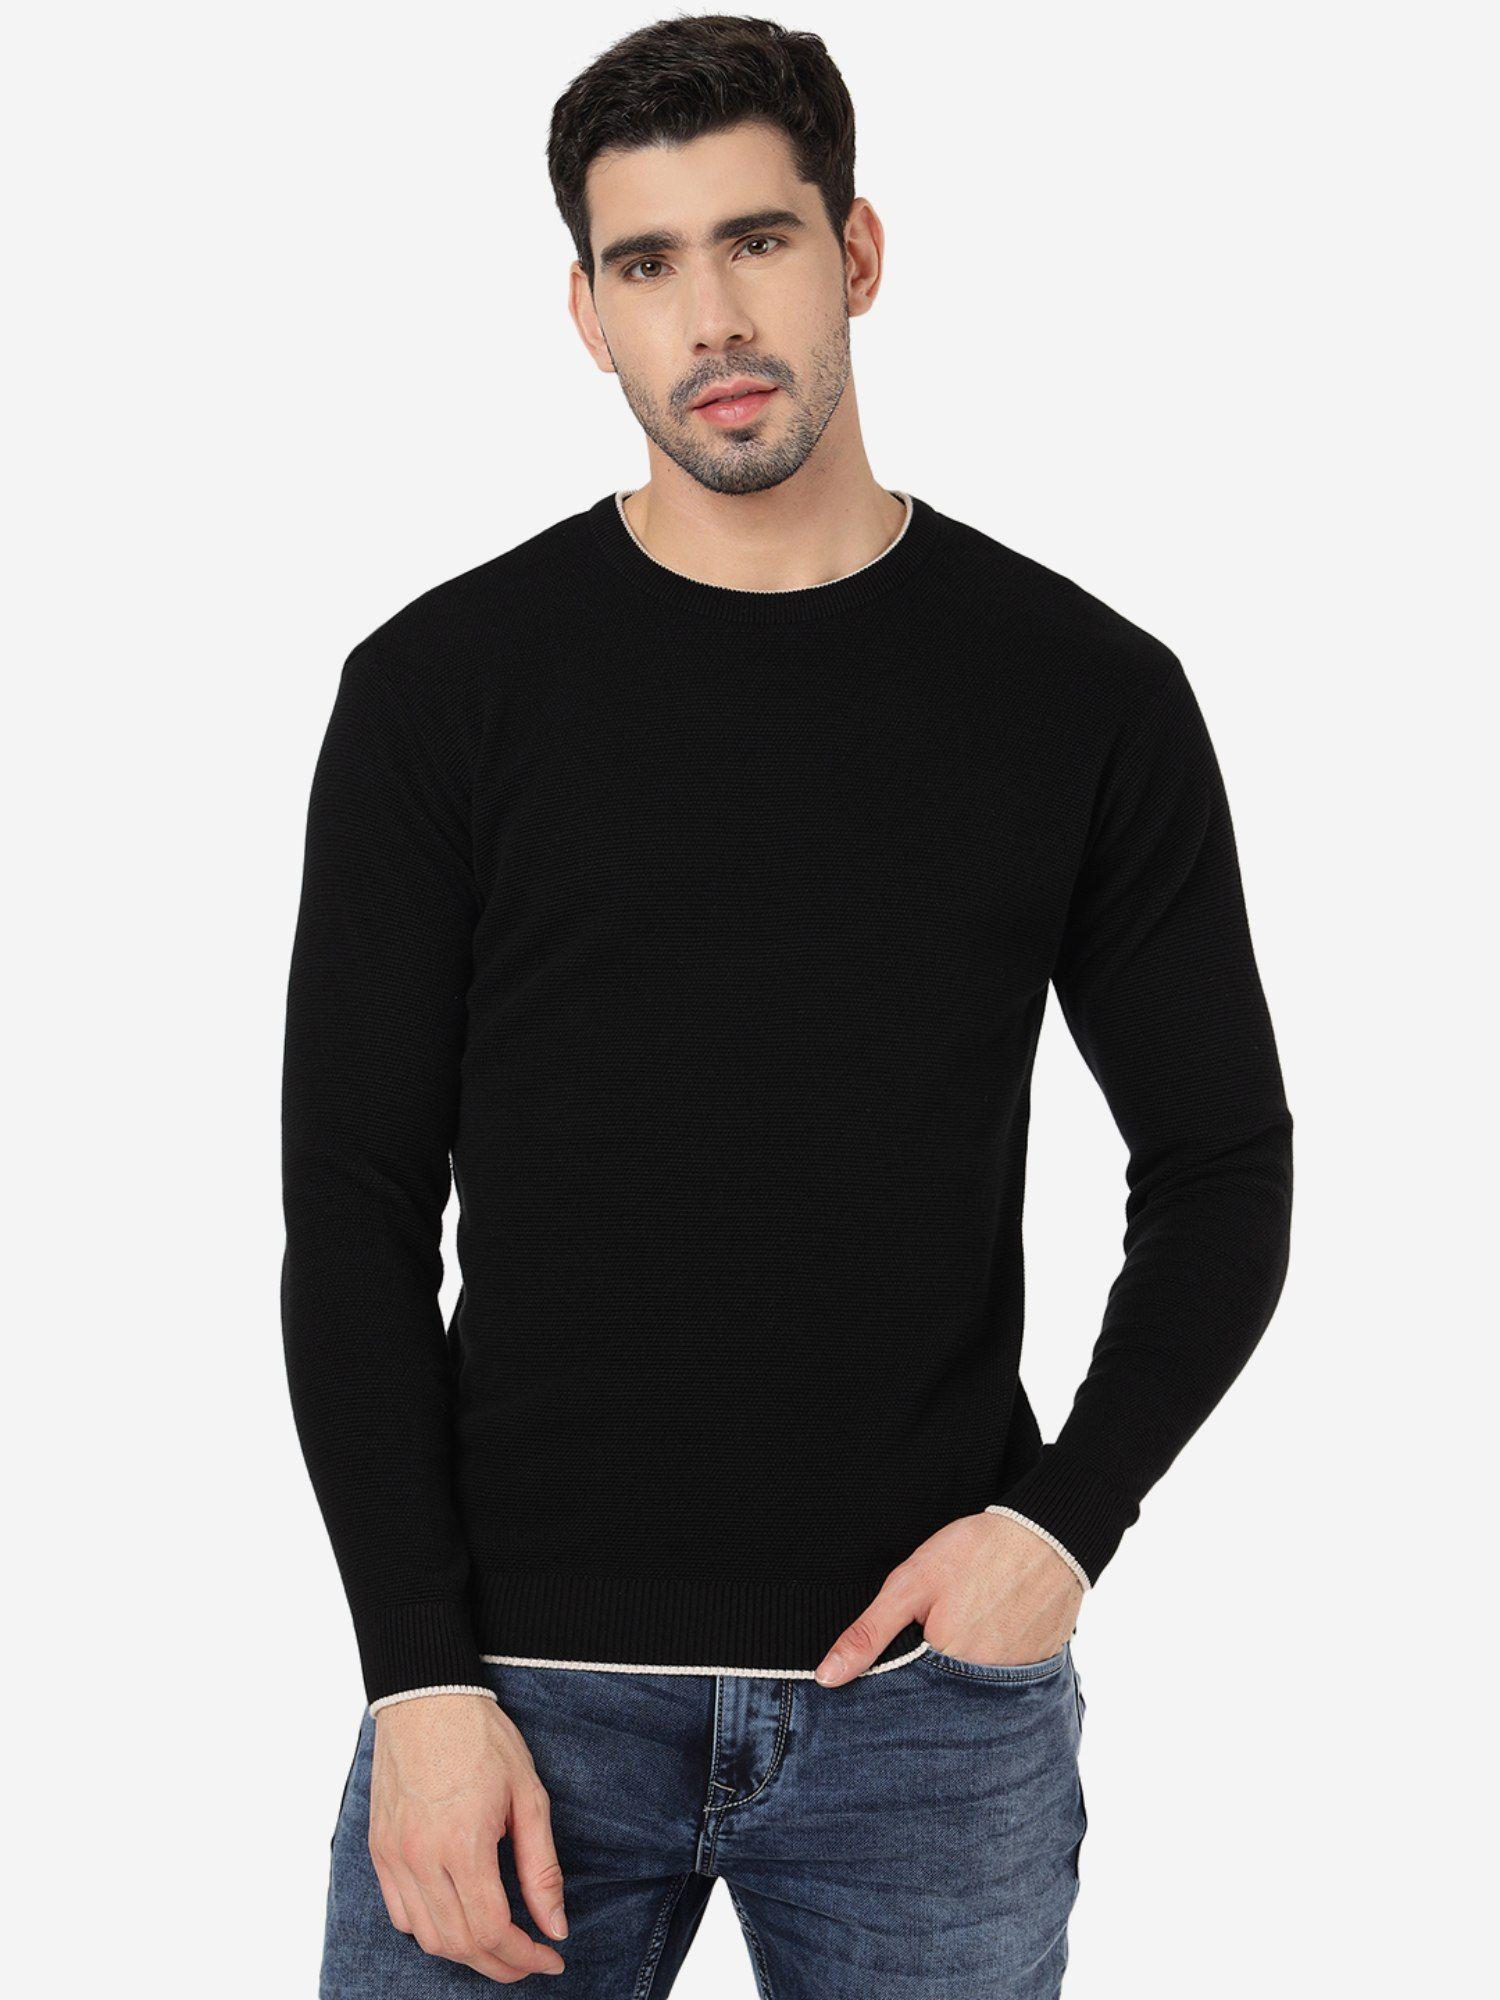 mens solid black slim fit full sleeve sweatshirt